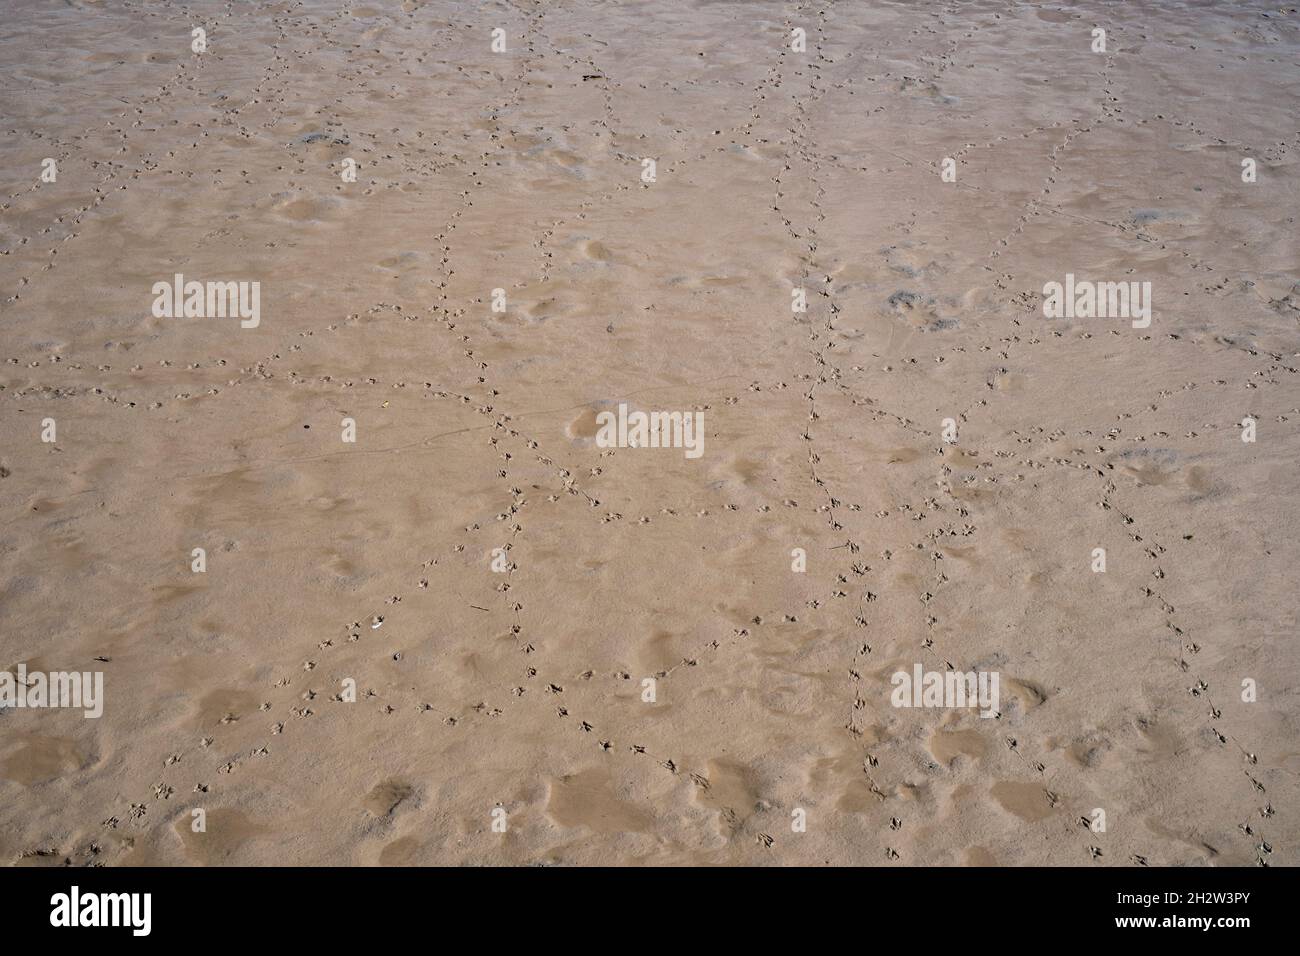 Empreintes d'oiseaux sur sable humide sur la plage Banque D'Images